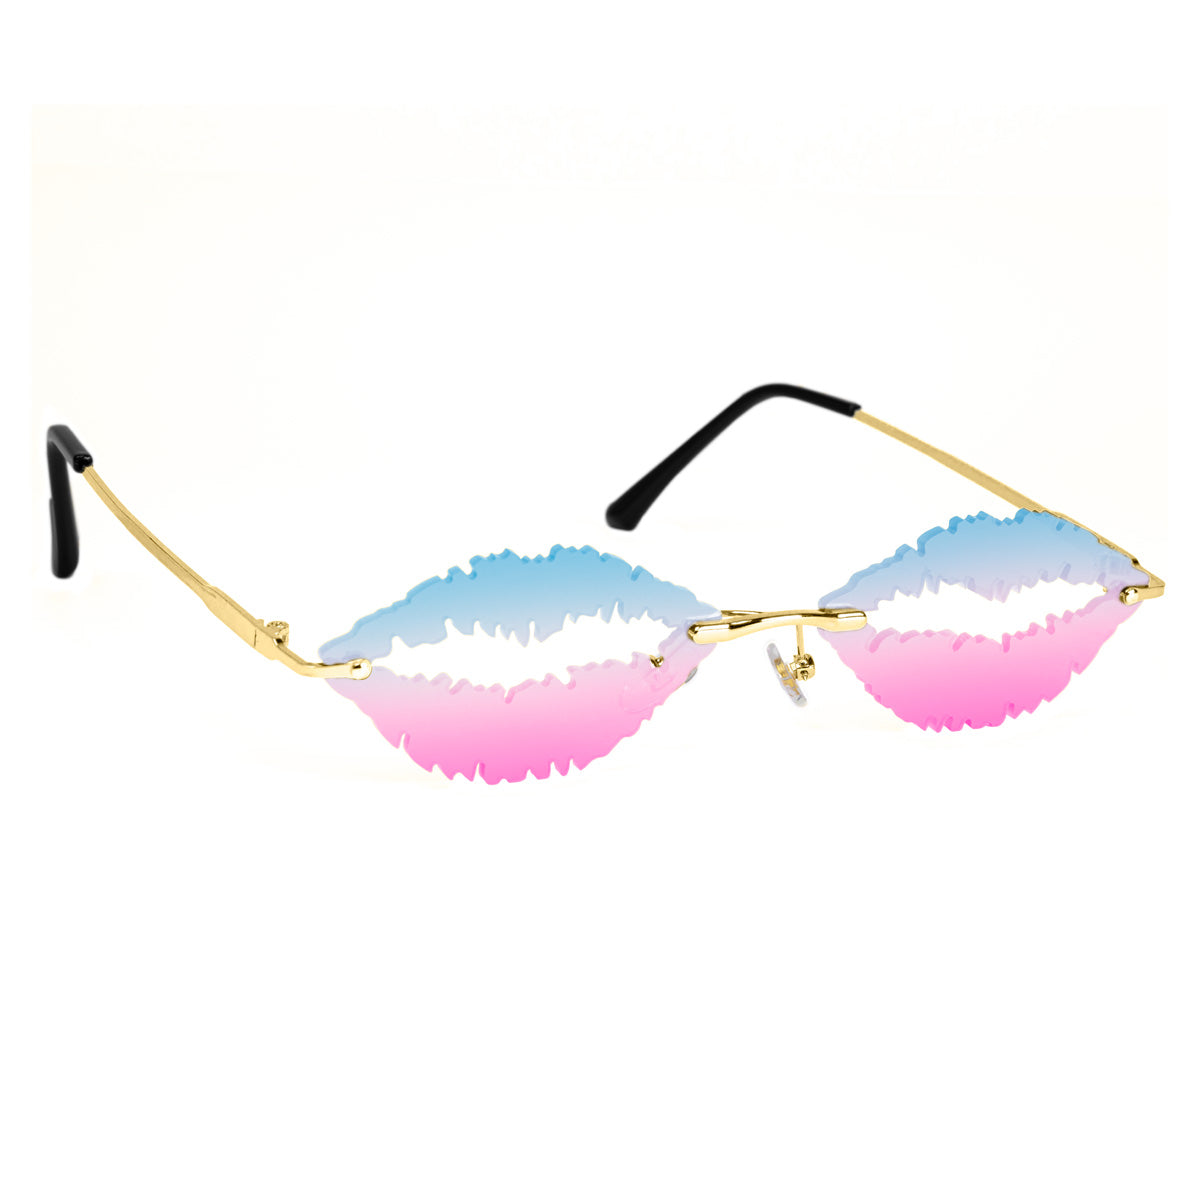 Two -color lip sunglasses